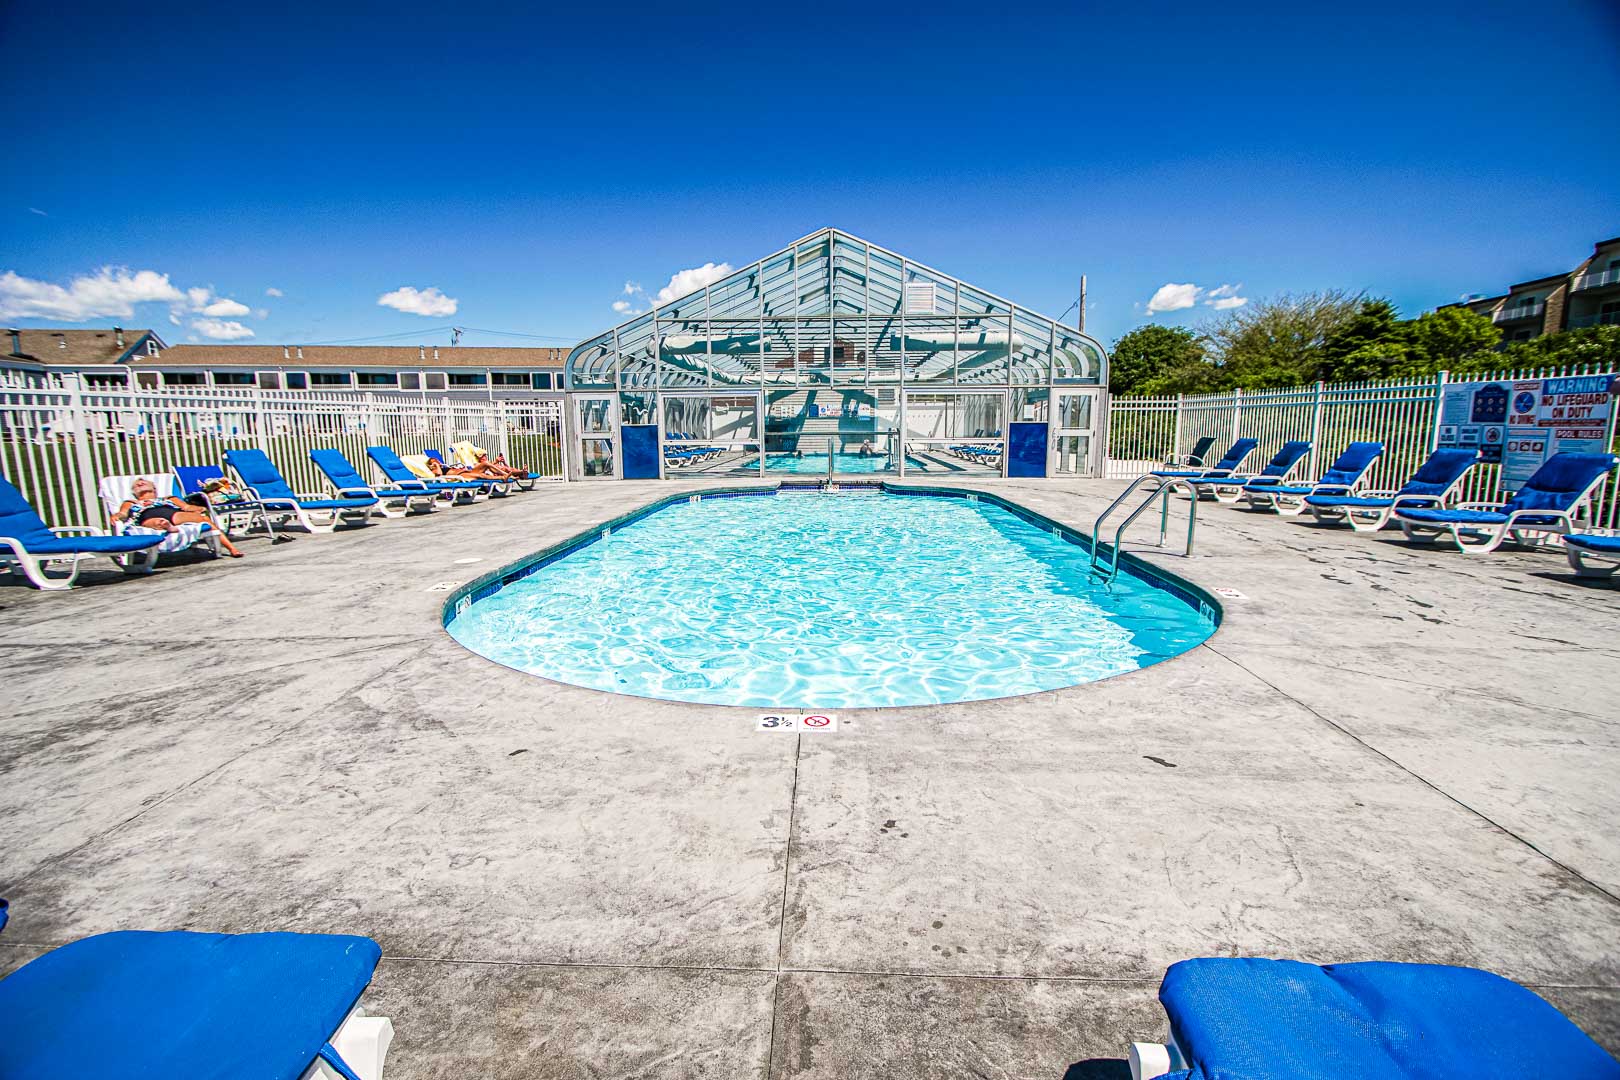 A refreshing indoor pool at VRI's Edgewater Beach Resort in Massachusetts.